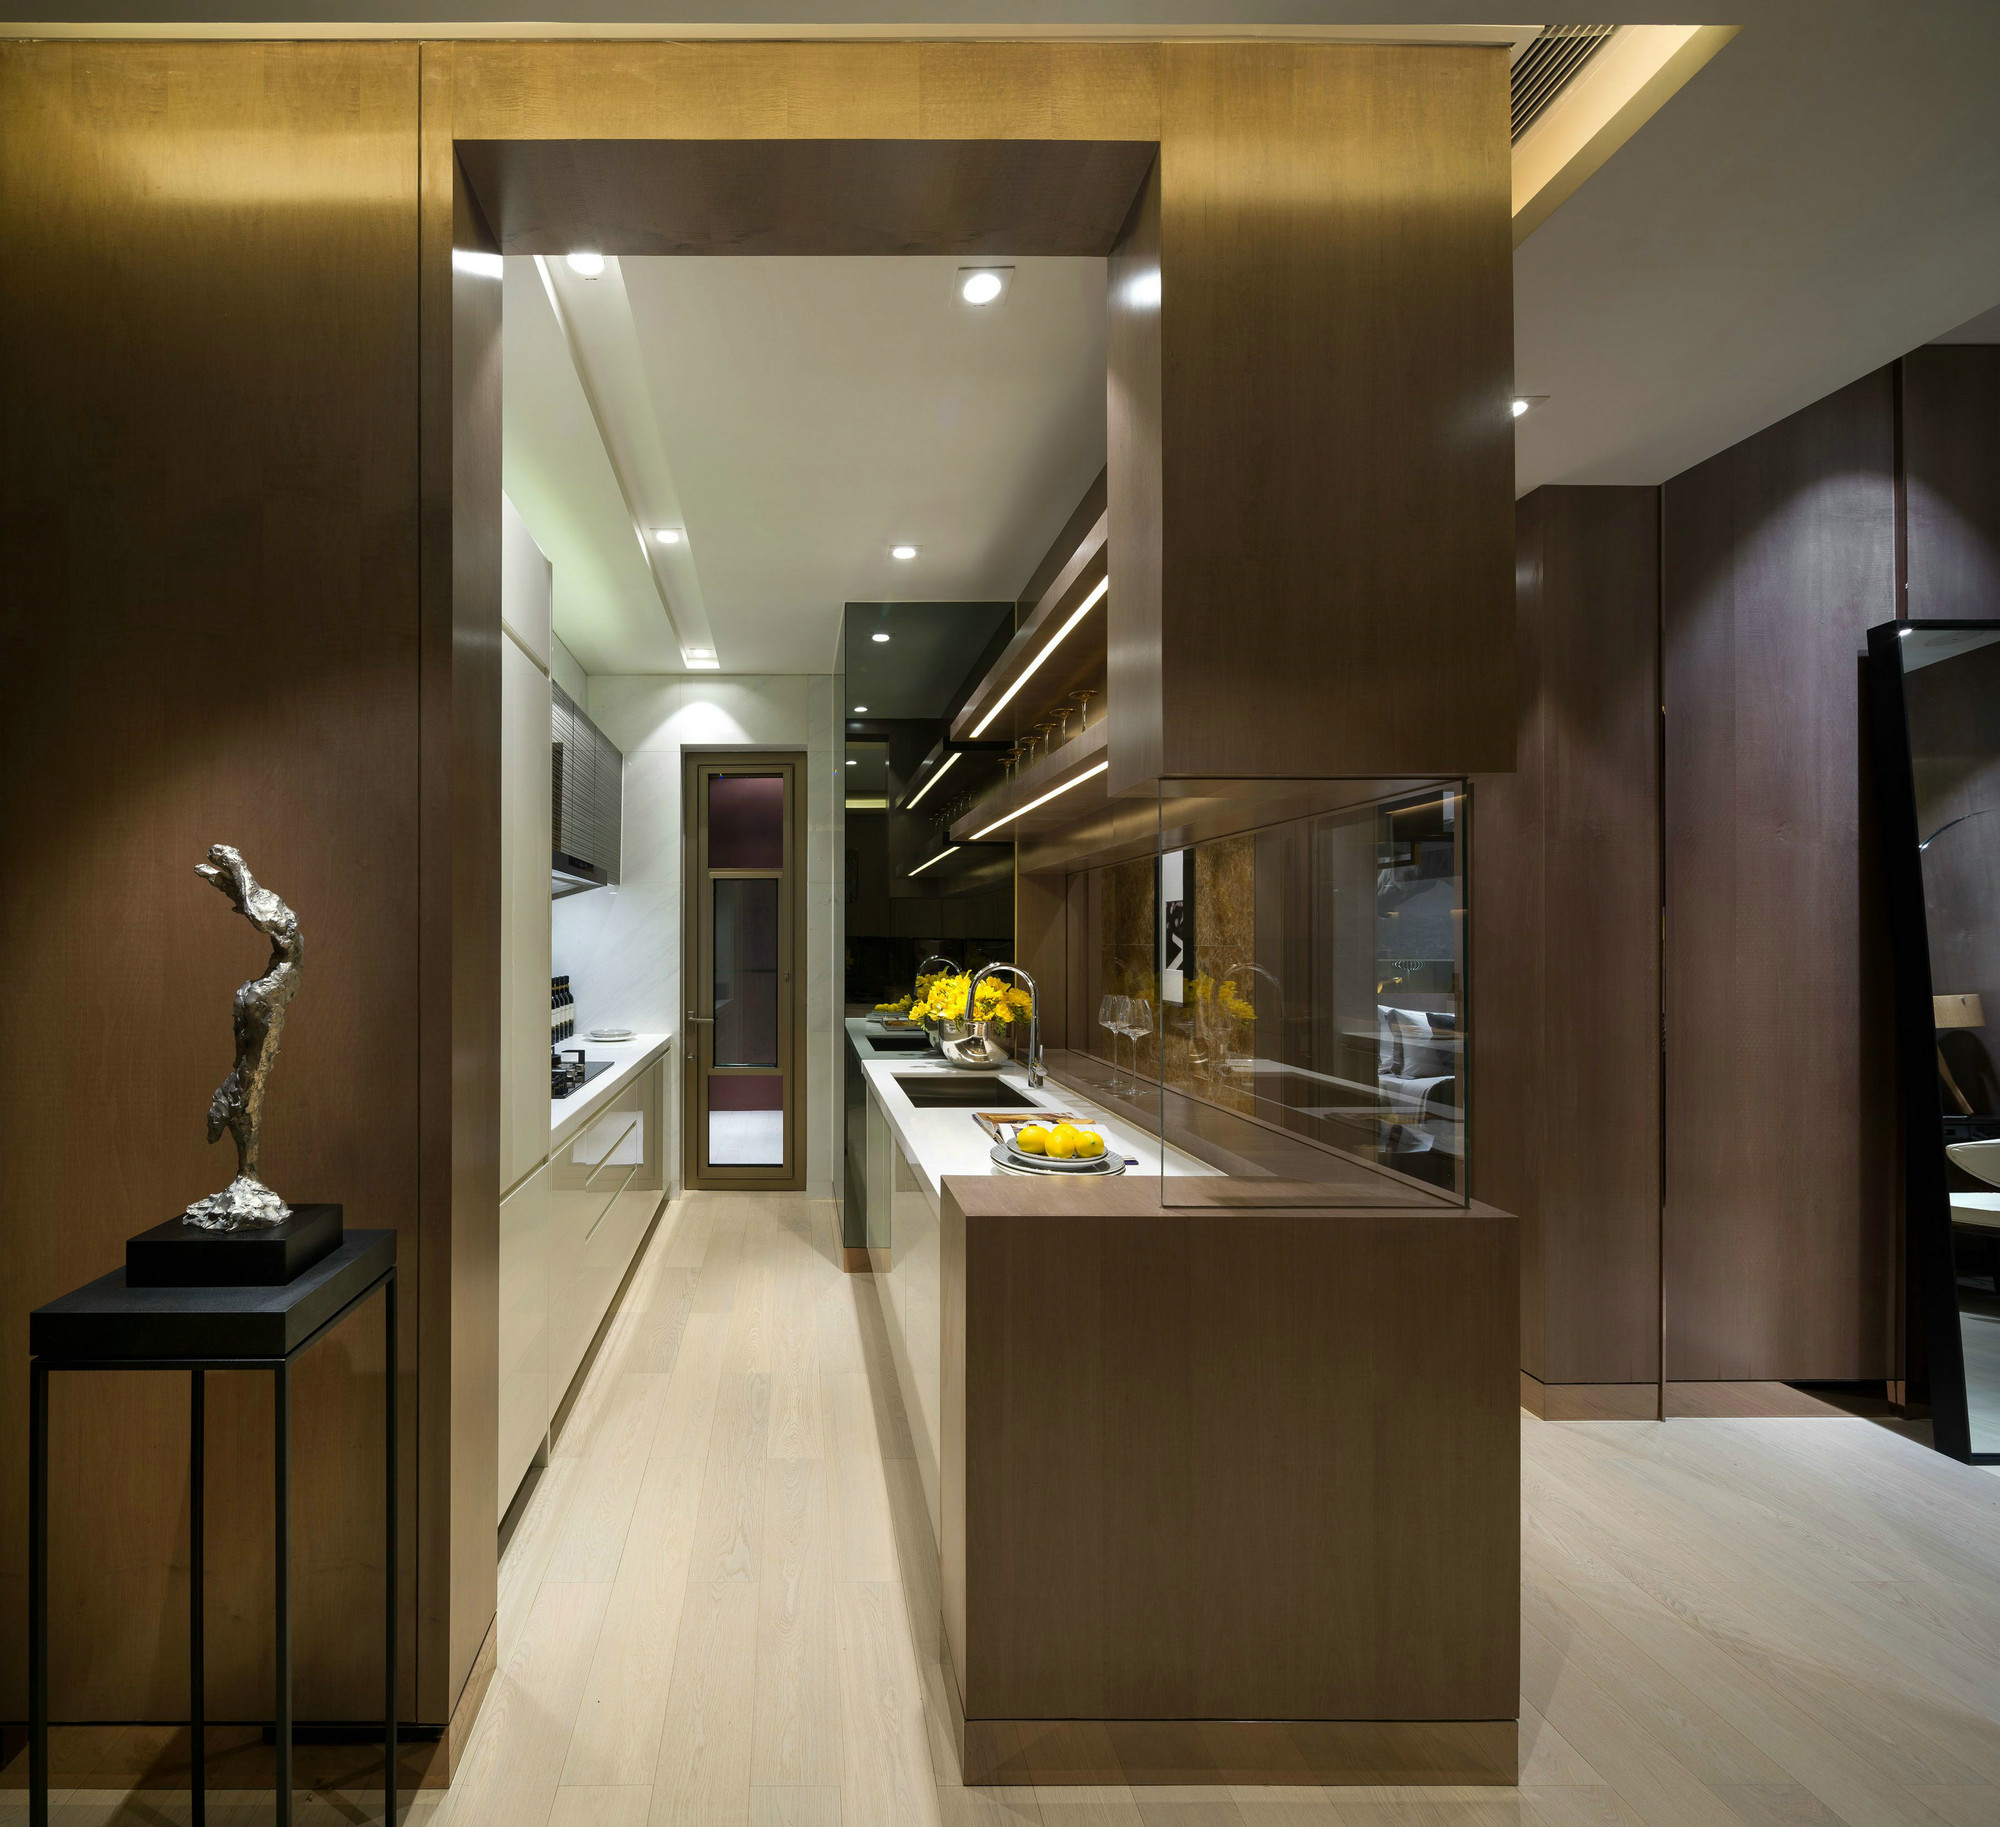 厨房空间简练不失高级感，在筒灯的照射下，米色橱柜温婉大气，空间明朗舒适。